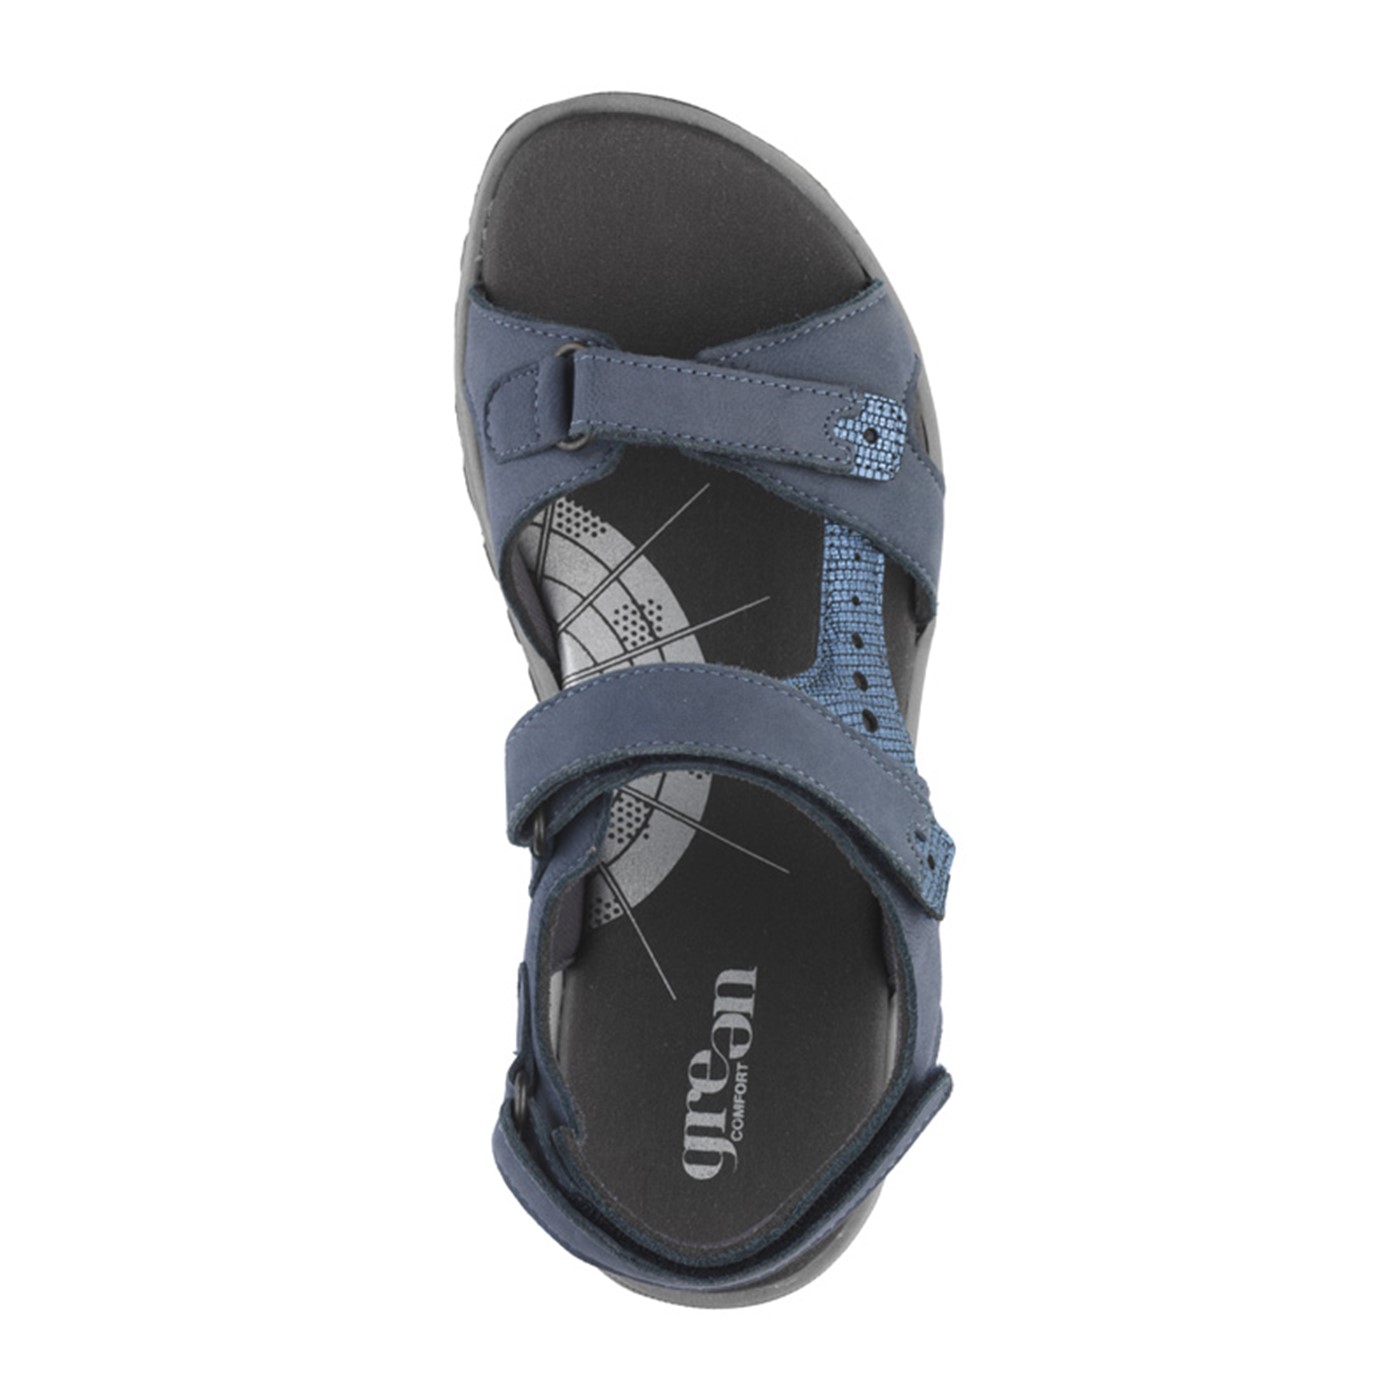 Produktivitet udvikle Skyldfølelse Smart Green Comfort Camino sandal i blå → se den her